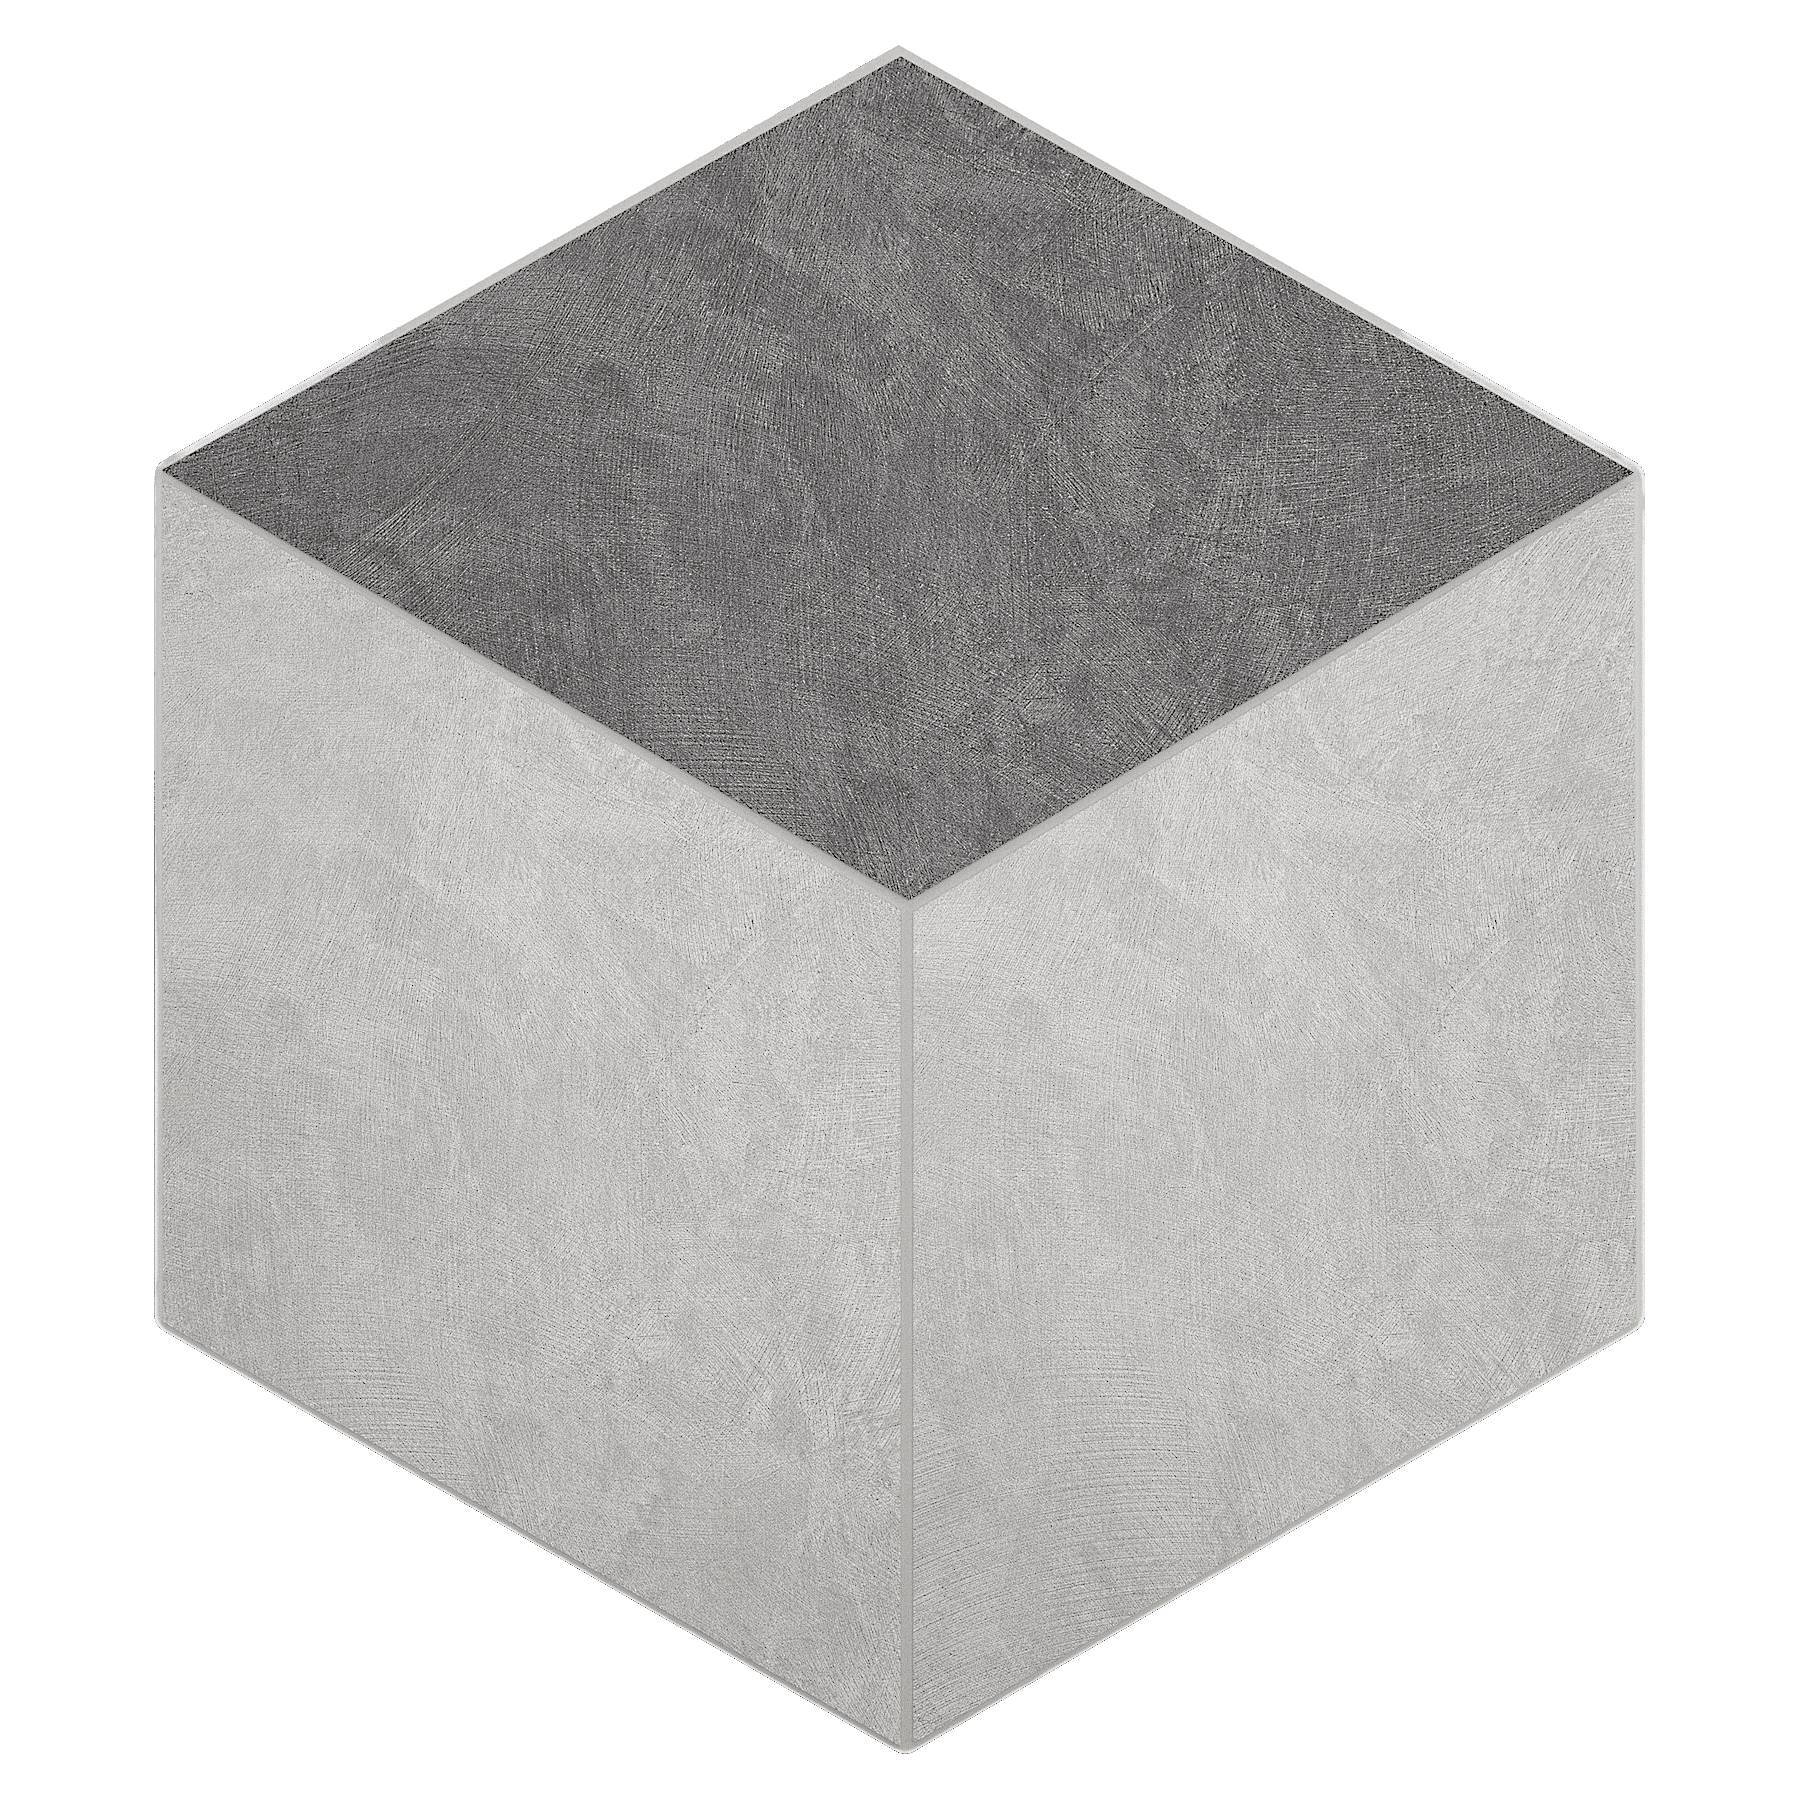 Мозаика Ametis Spectrum Milky White/Grey SR00/SR01 Cube Непол. 29x25 комплект ametis spectrum ступень grey sr01 33x120 непол подступенок 14 5x120